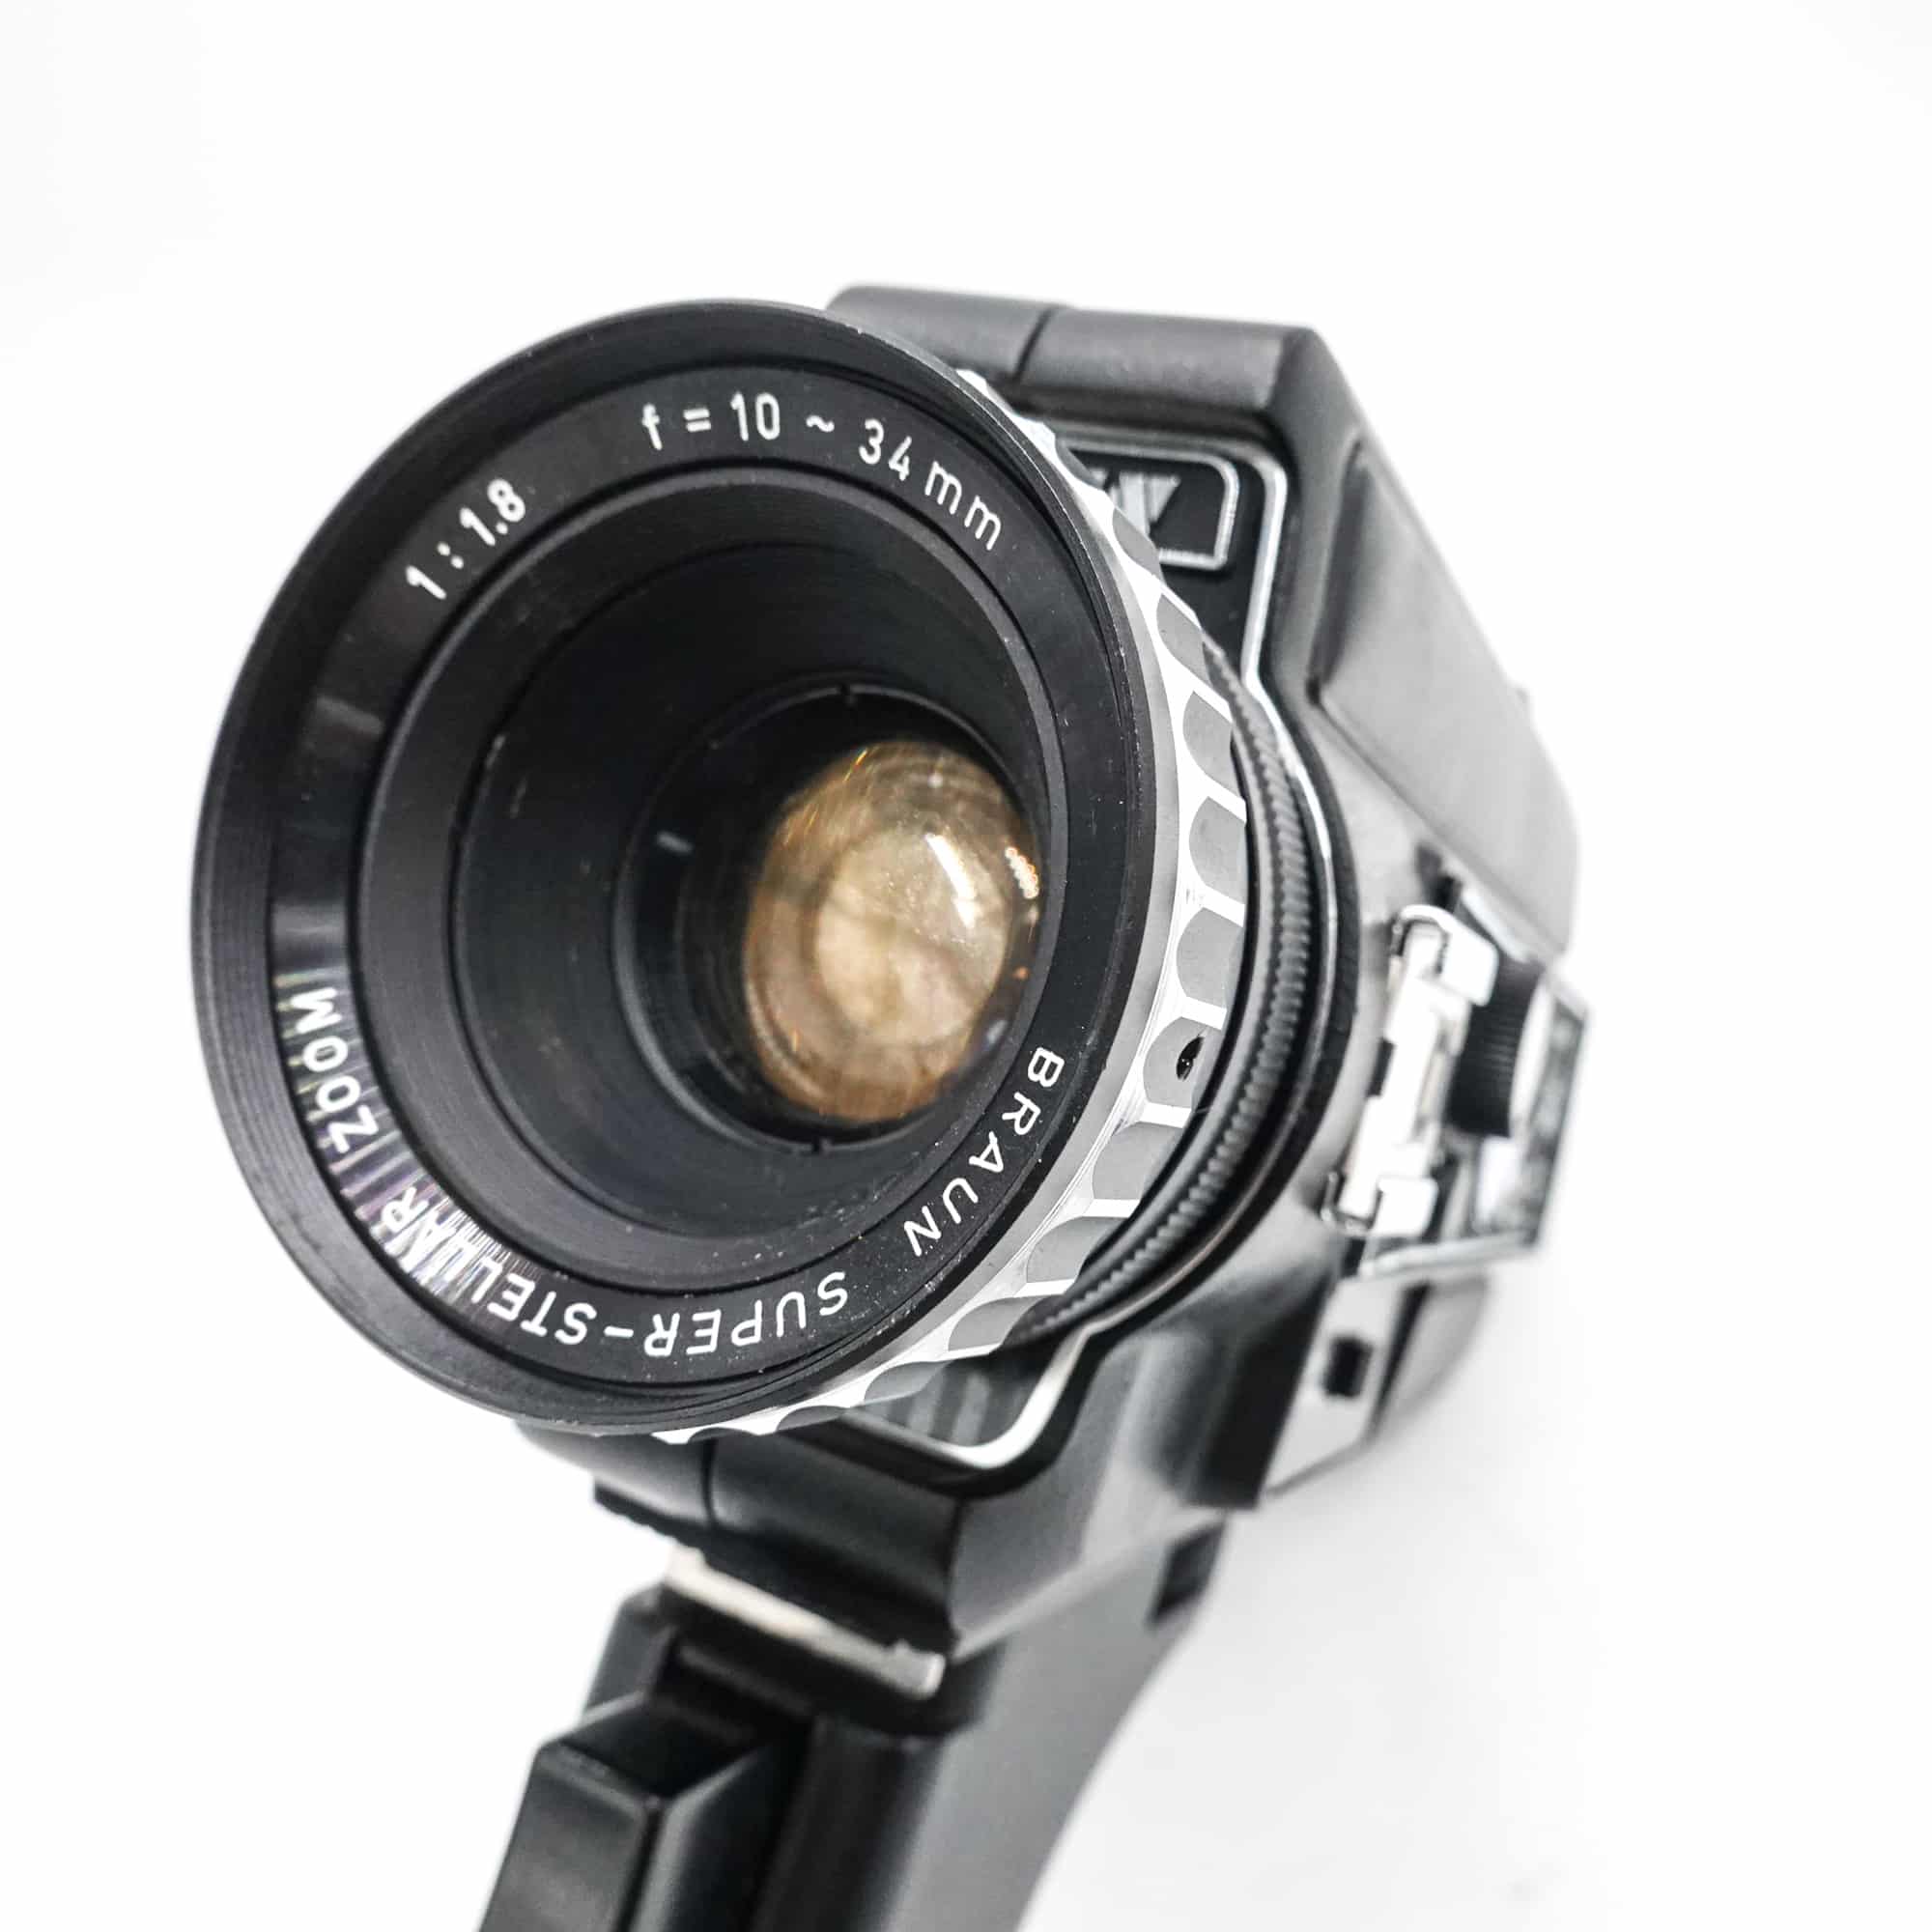 Braun Compact 350 Super 8 Camera